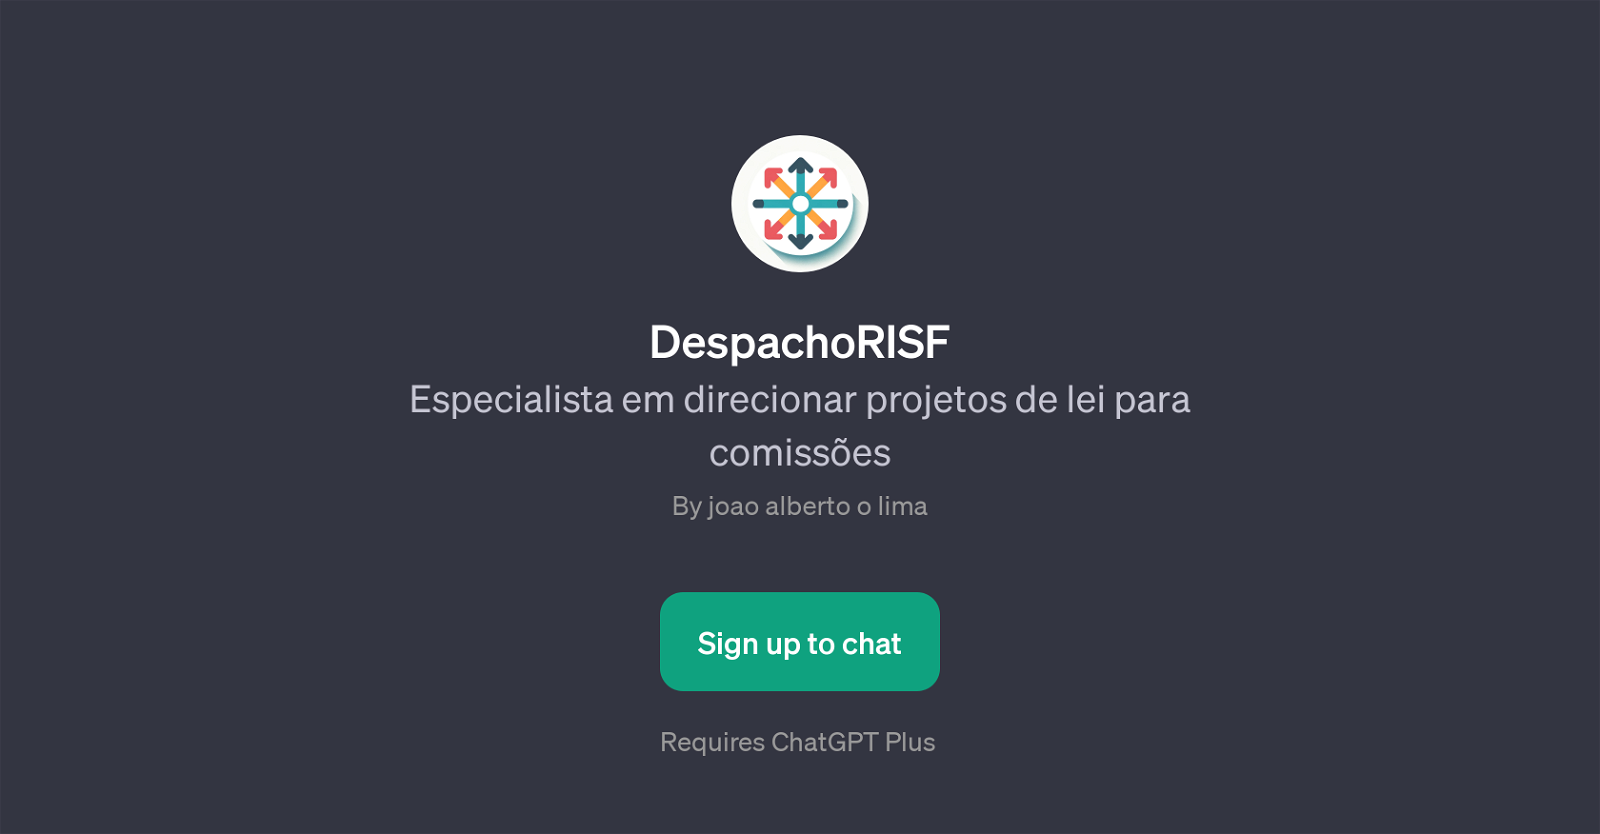 DespachoRISF website